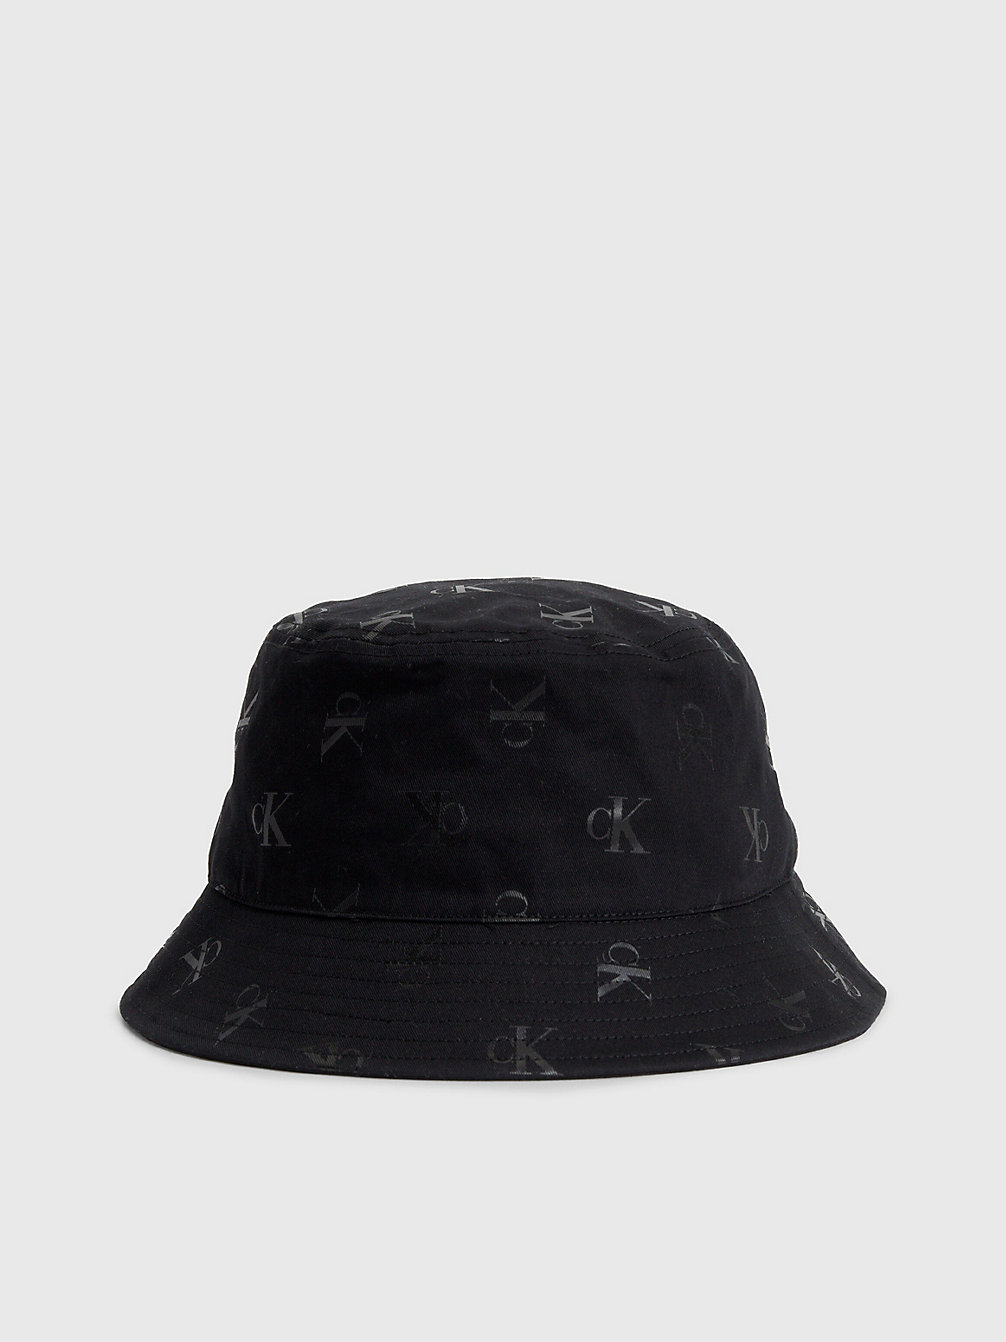 ALLOVER PRINT > Kapelusz Typu Bucket Hat Z Bawełny Organicznej > undefined Mężczyźni - Calvin Klein